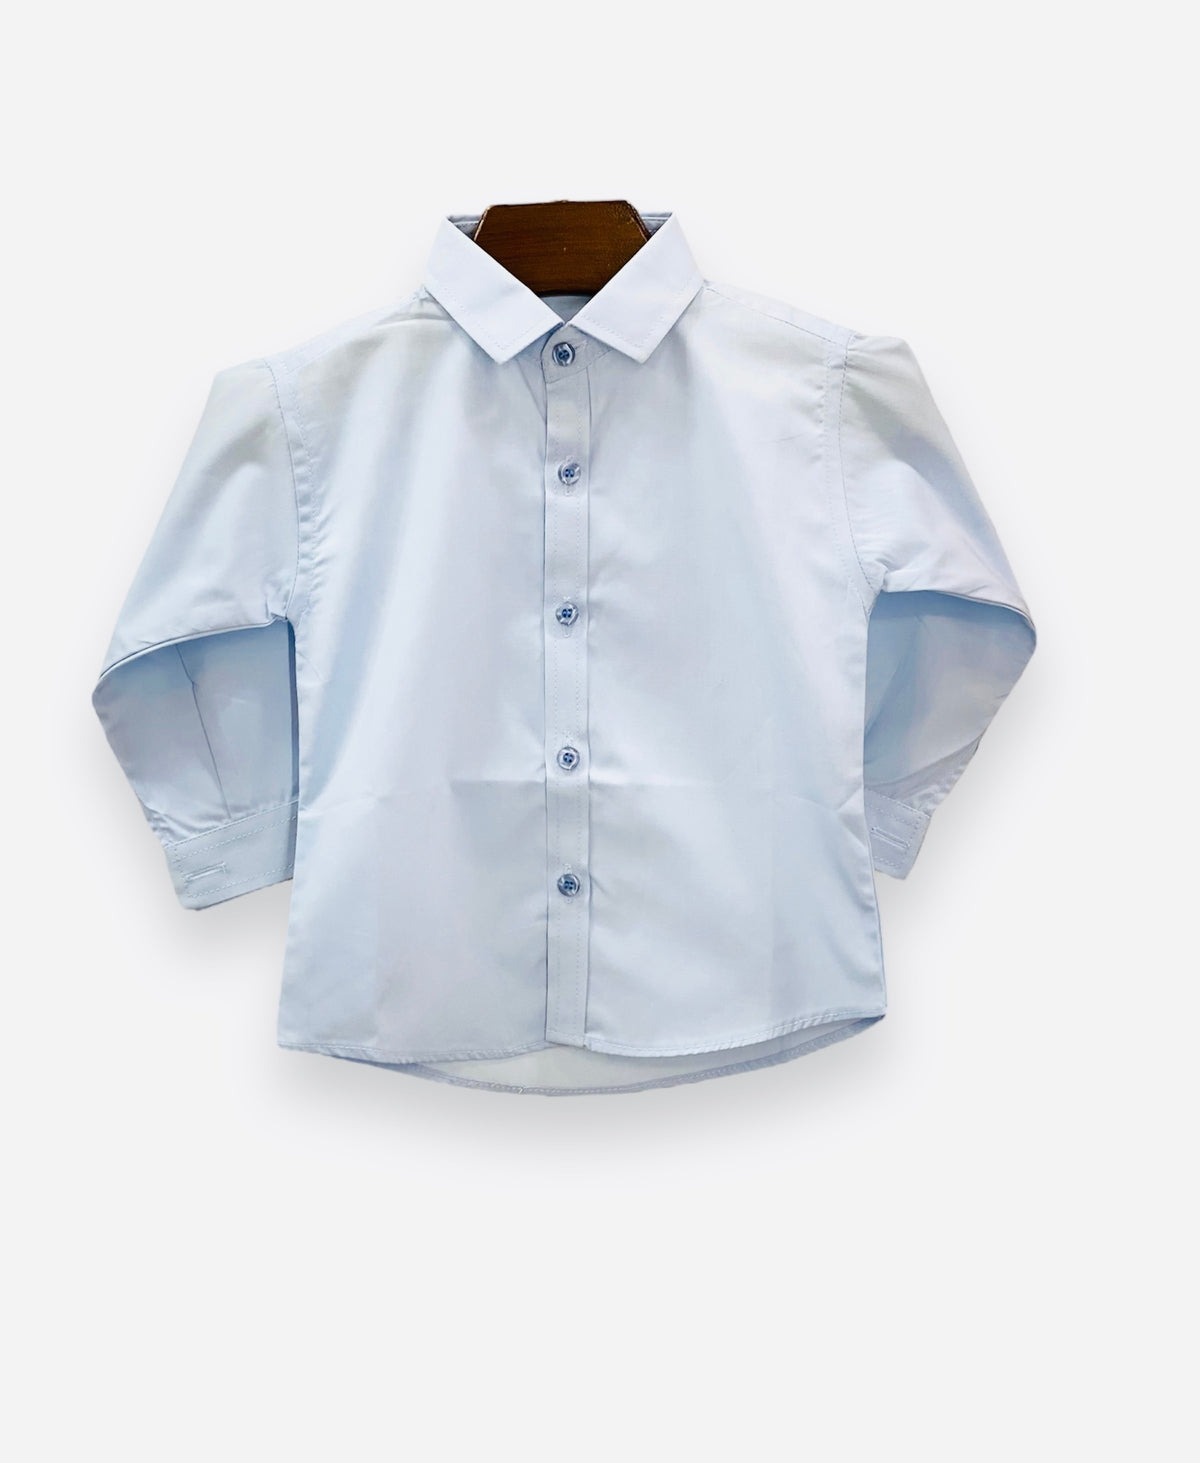 Plain Blue Formal Shirt